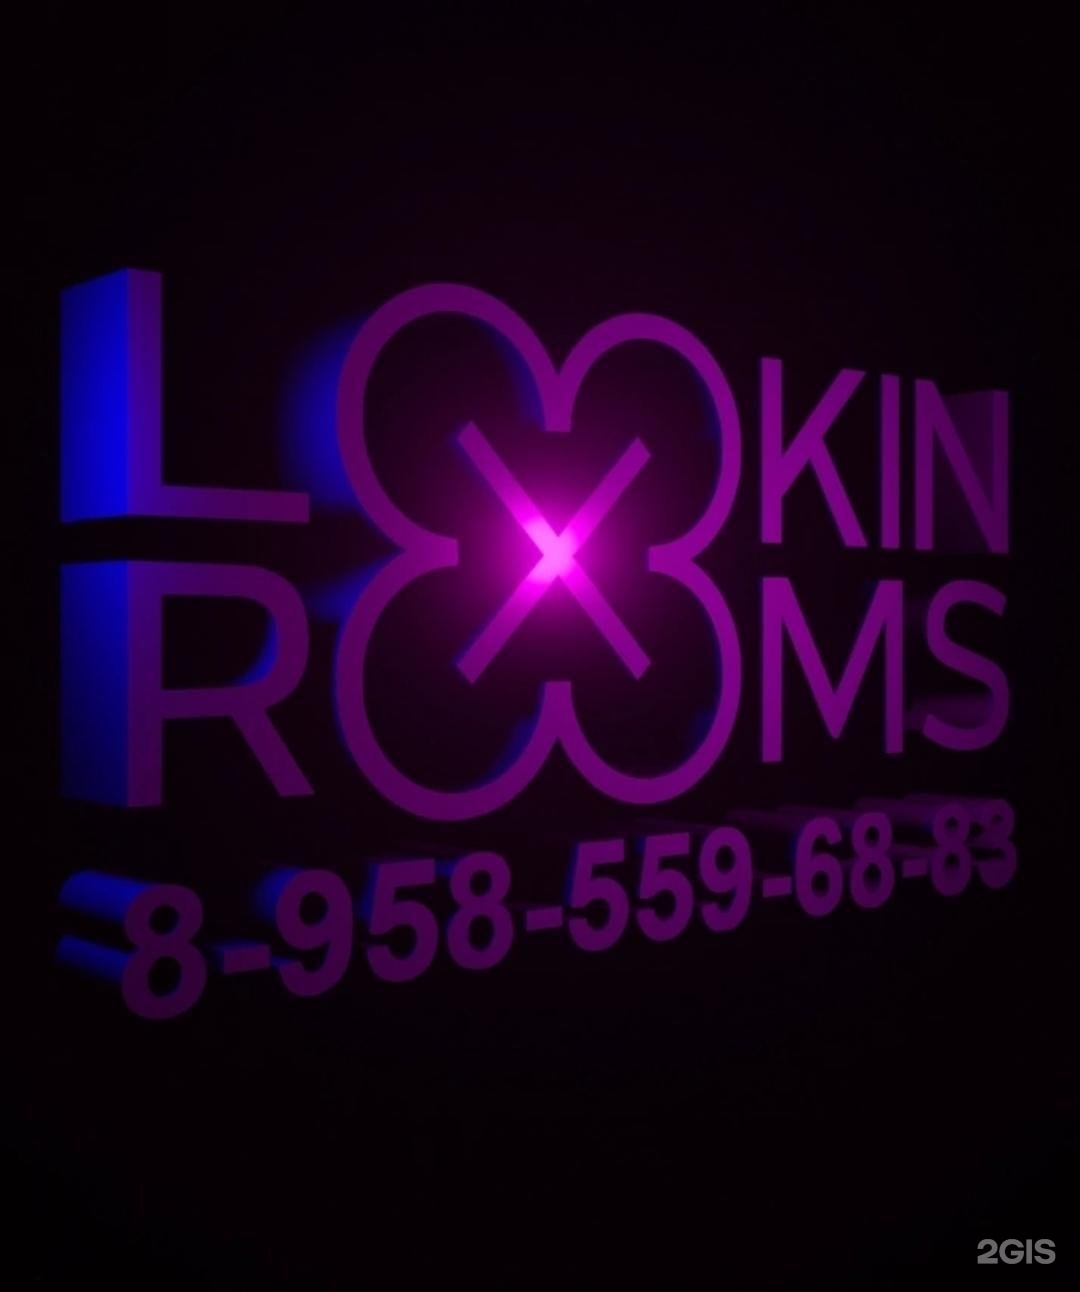 Lookin Rooms Тверская 18к1. Lookin Rooms лого. Lookin Rooms клуб Tokio Hotel. Lookin Rooms Абакан. Lookin rooms ул тверская 18